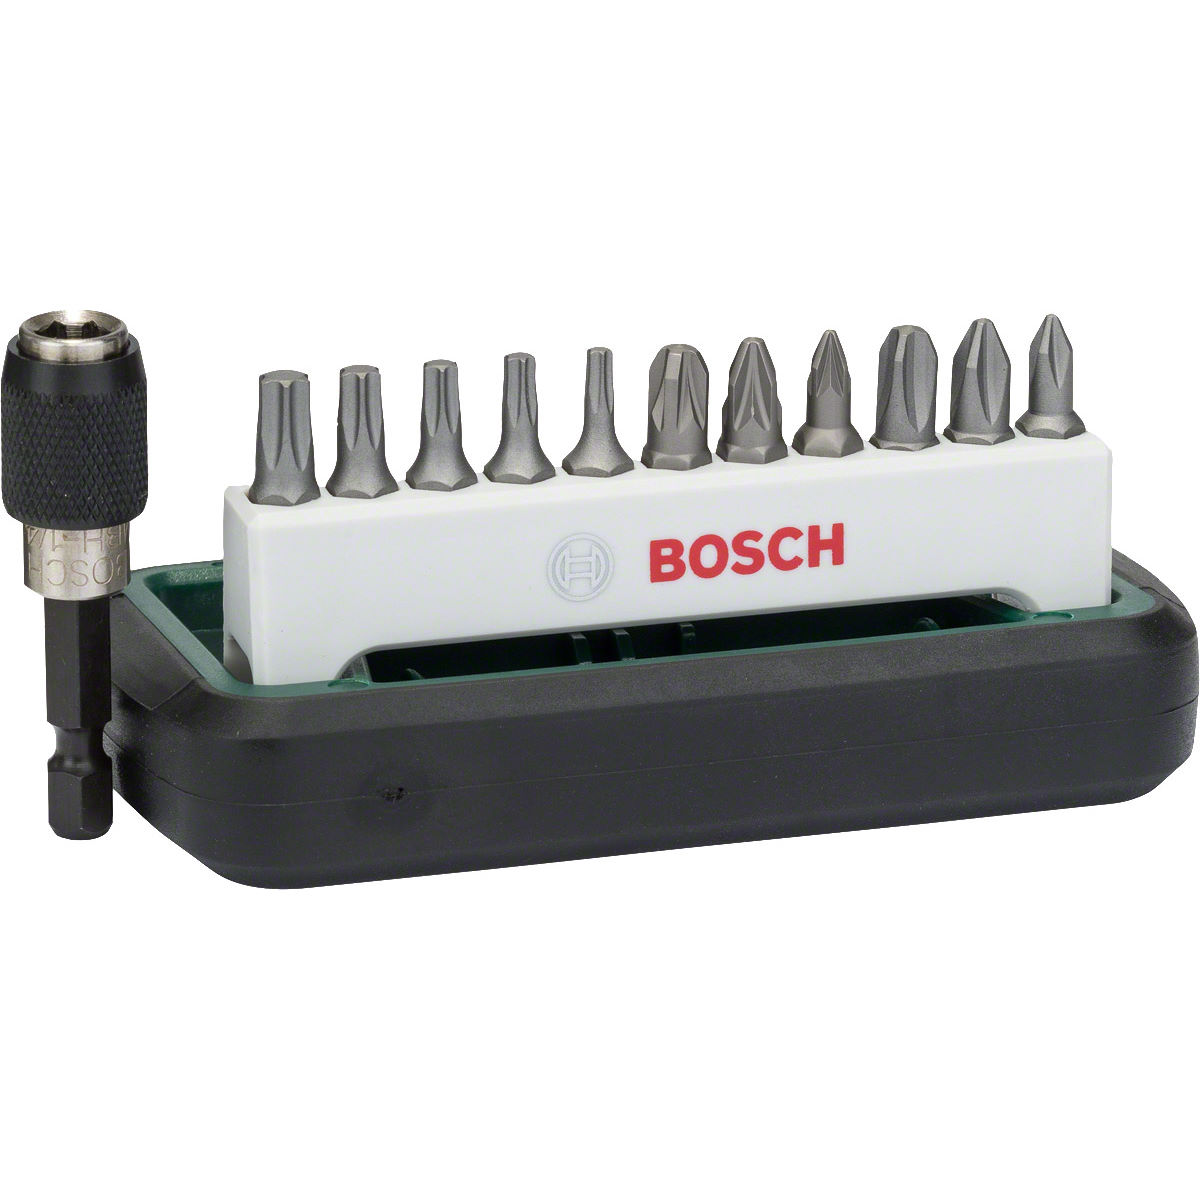 Juego de brocas compactas Bosch (12 piezas) - Juegos de herramientas